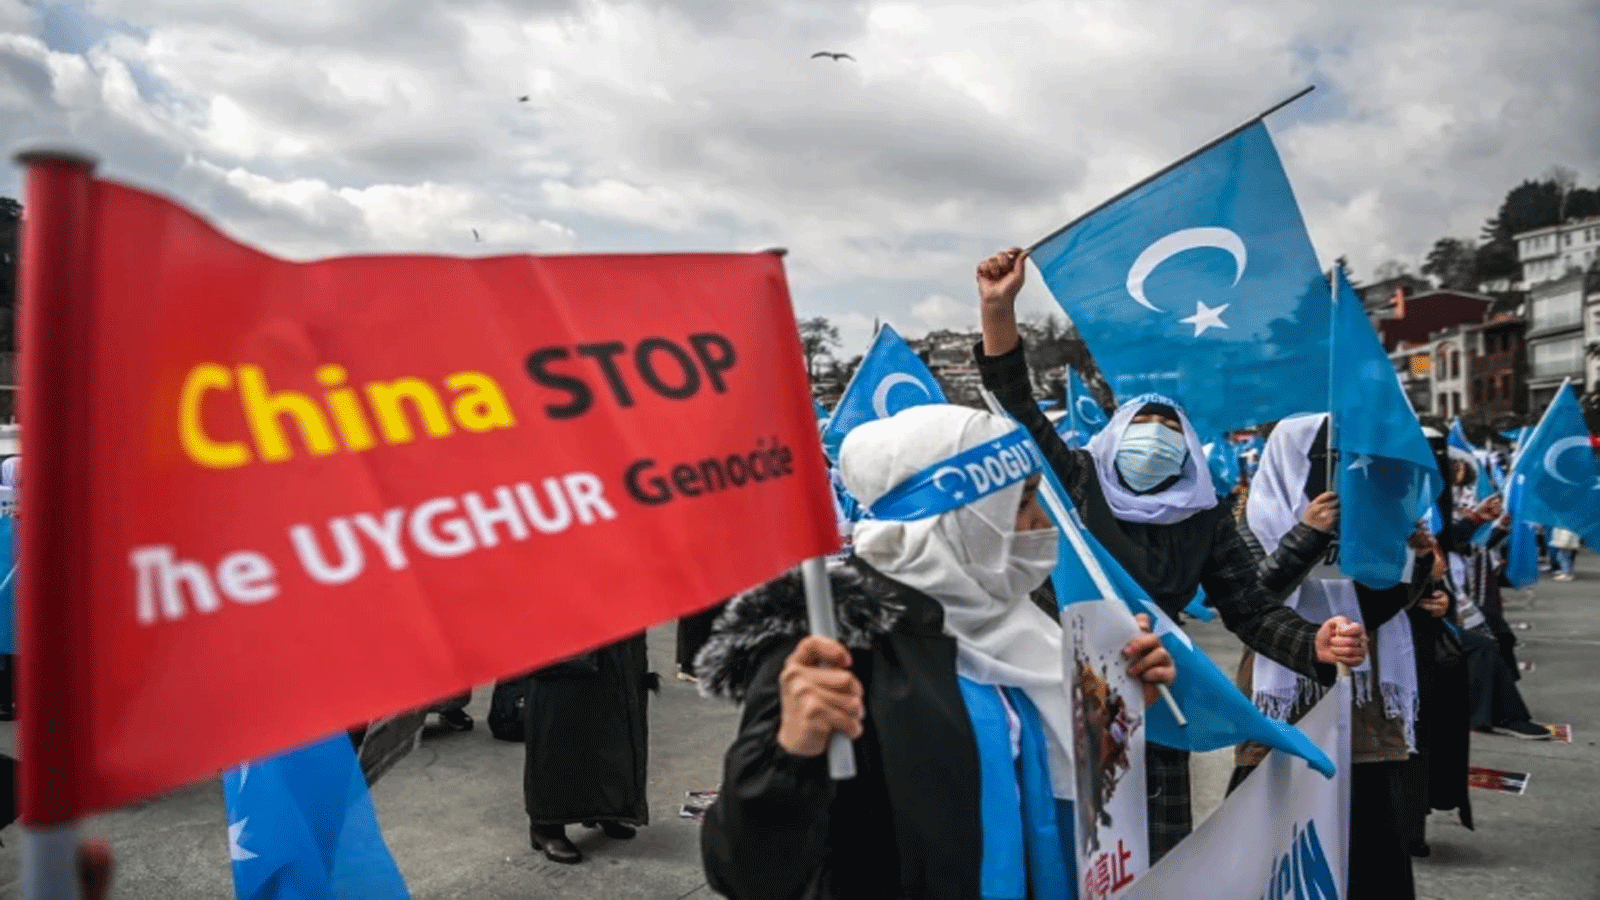 تظاهرة دعماً للأويغور الأقلية المسلمة الموجودة في الصين التي يقال أنها تتعرض لممارسات ترقى لـ